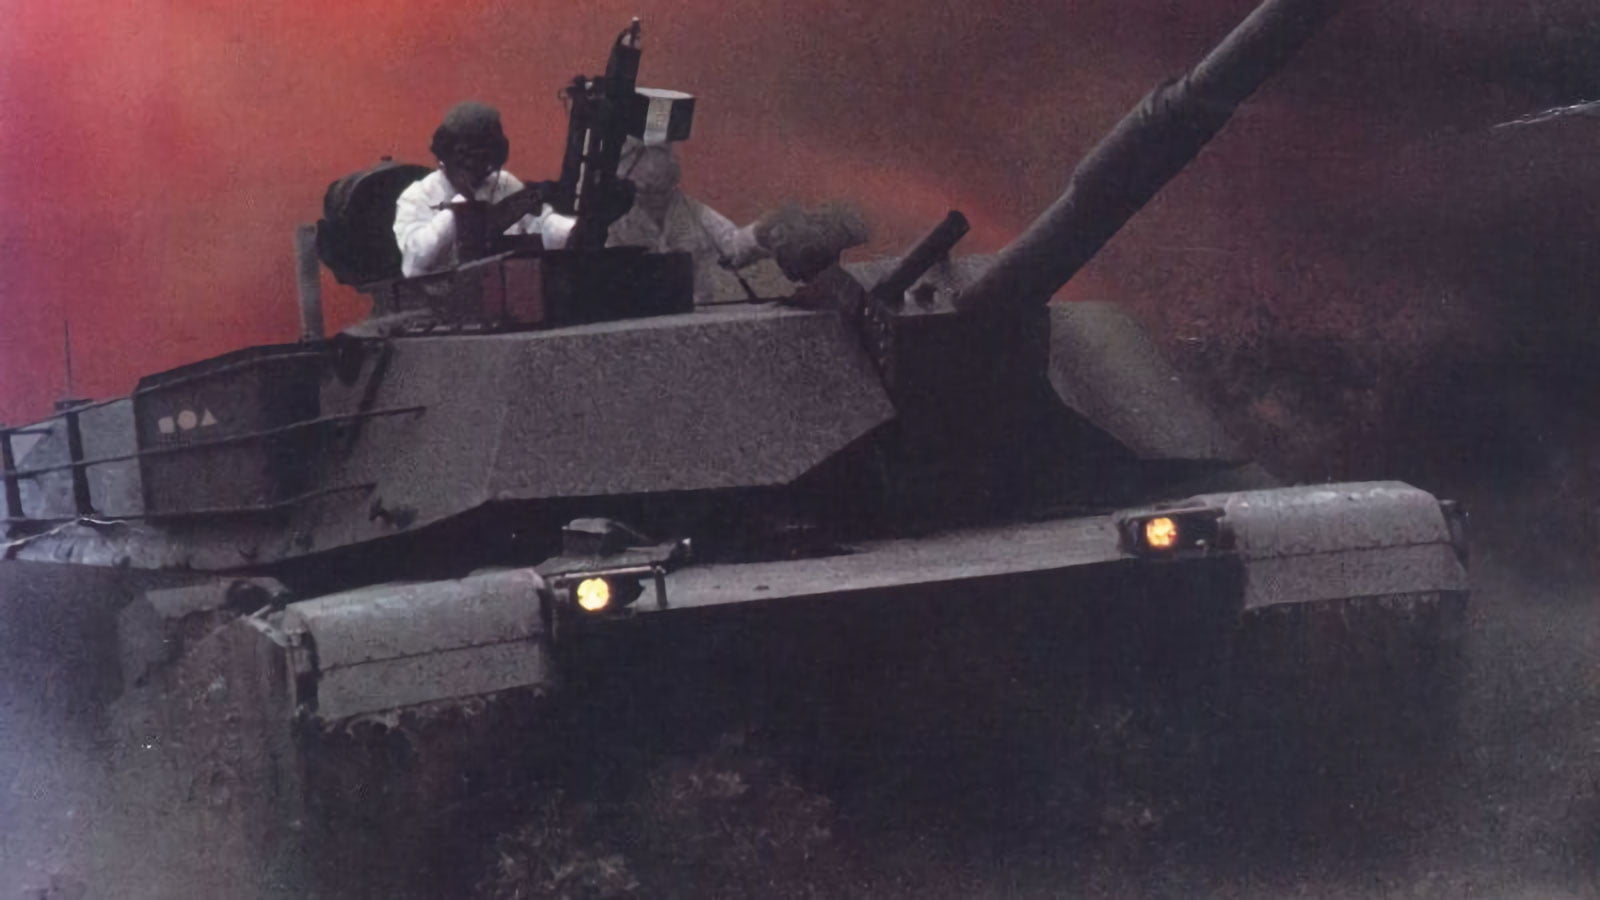 Abrams Battle Tank